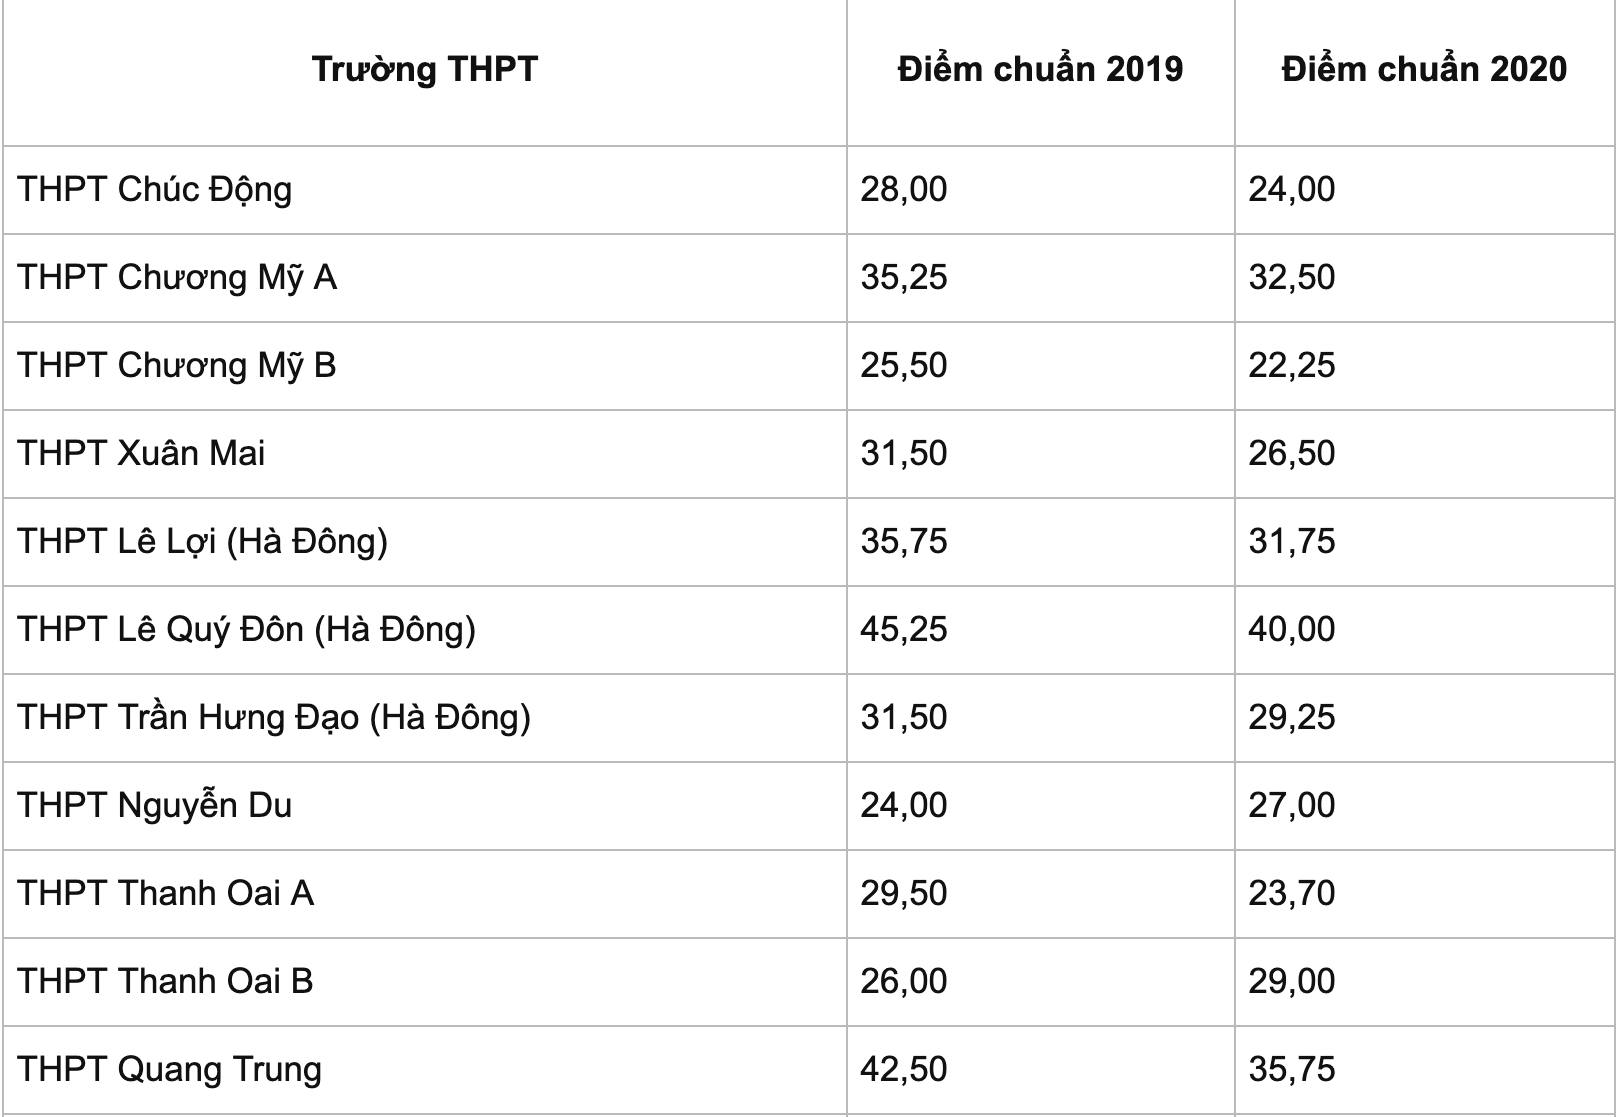 Điểm chuẩn lớp 10 công lập Hà Nội năm 2021 chi tiết các trường THPT